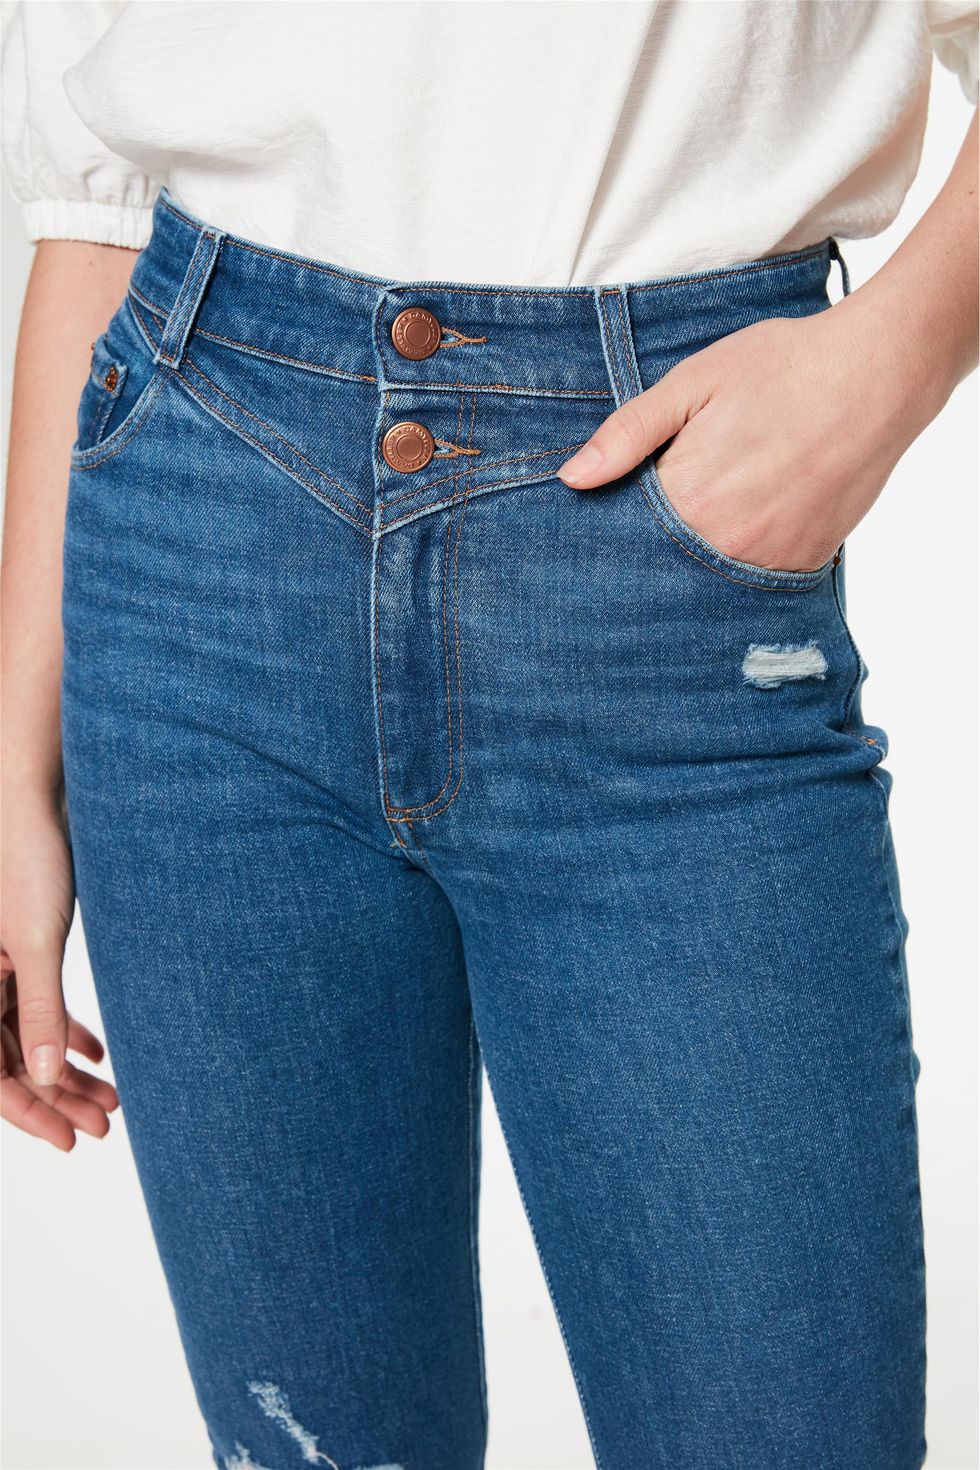 Calca-Jeans-Skinny-com-Recorte-Feminina-Frente--